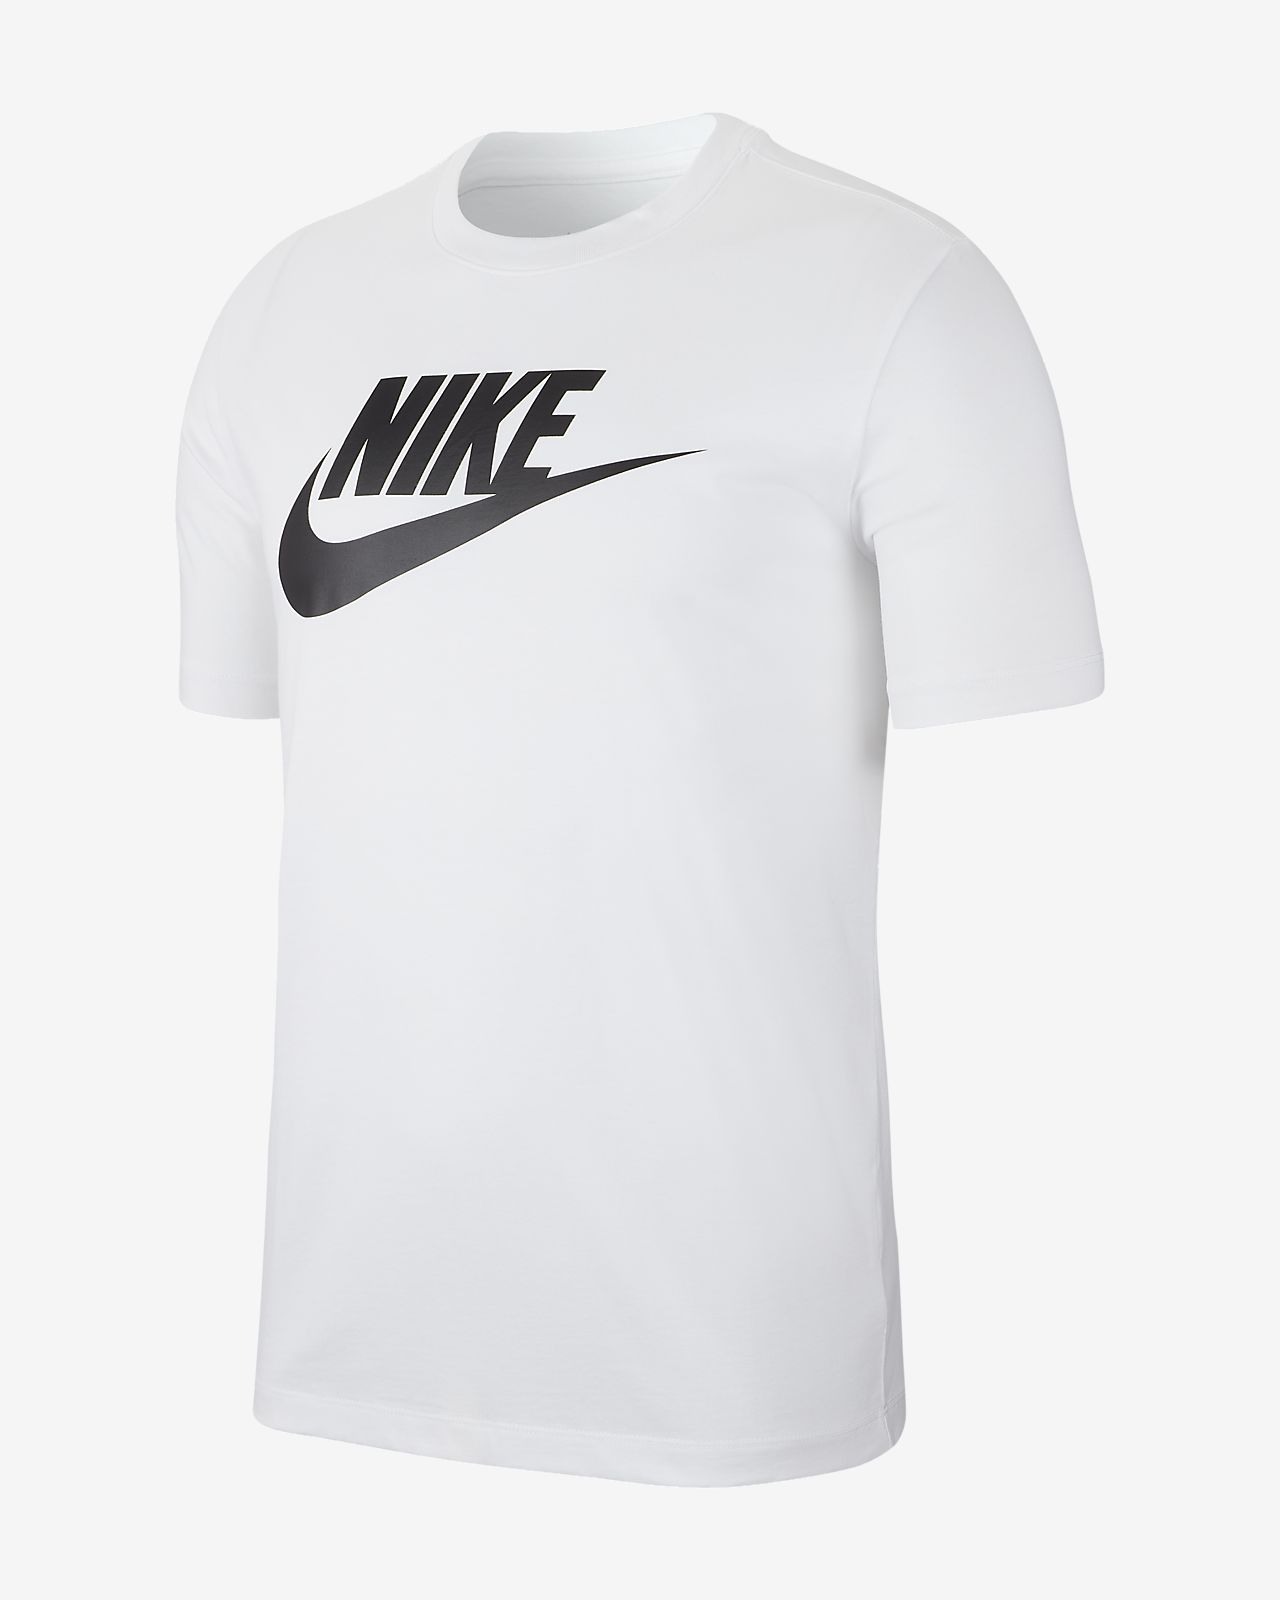 Nike公式 ナイキ スポーツウェア メンズ Tシャツ オンラインストア